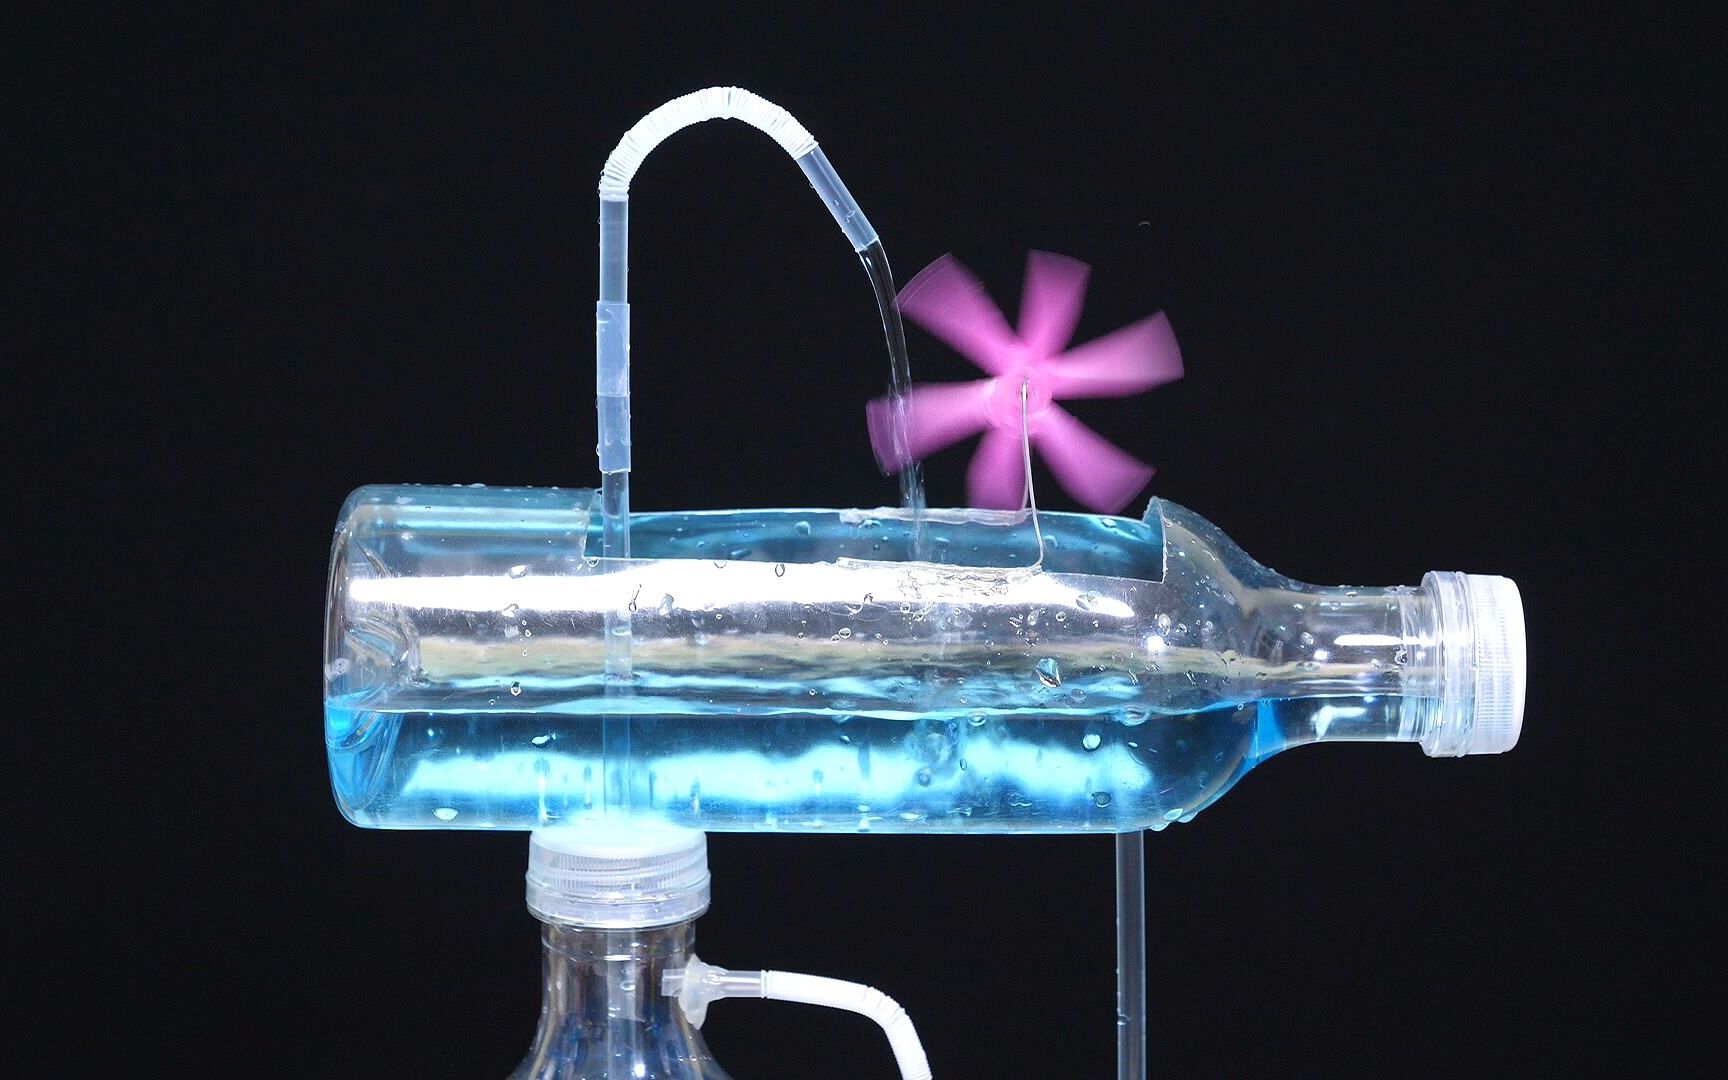 用塑料瓶制作流水装置图片